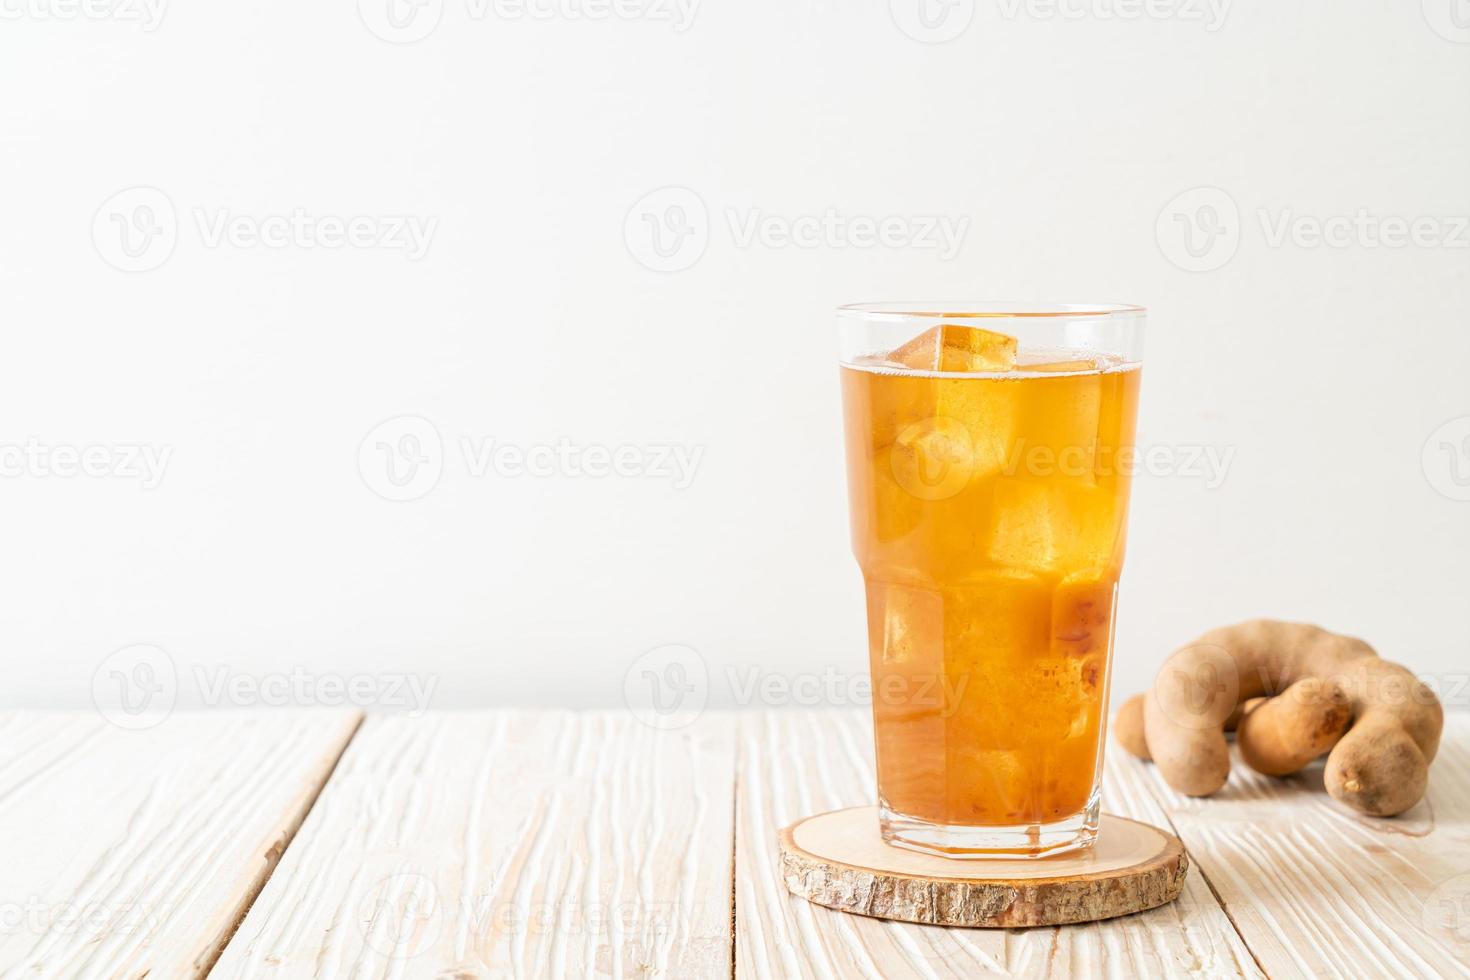 deliziosa bevanda dolce succo di tamarindo e cubetto di ghiaccio foto